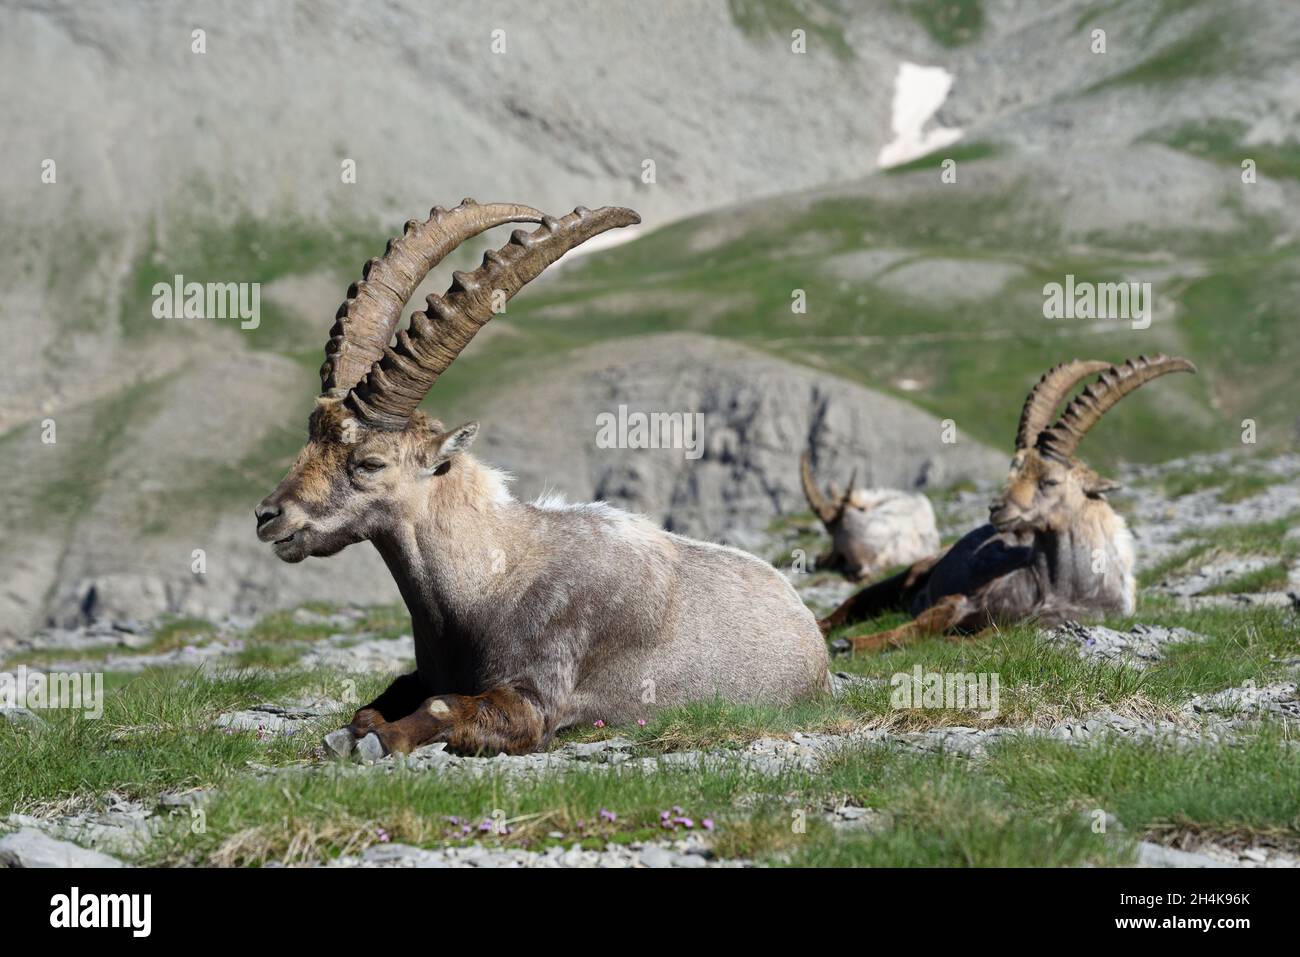 Gruppe oder Herde von Steinböcken oder Steinböcken, Capra Steinböcke, auch bekannt als Steinbock, Bouquetin oder Wildschweine auf dem Rücken im Nationalpark Mercantour Französische Alpen Stockfoto